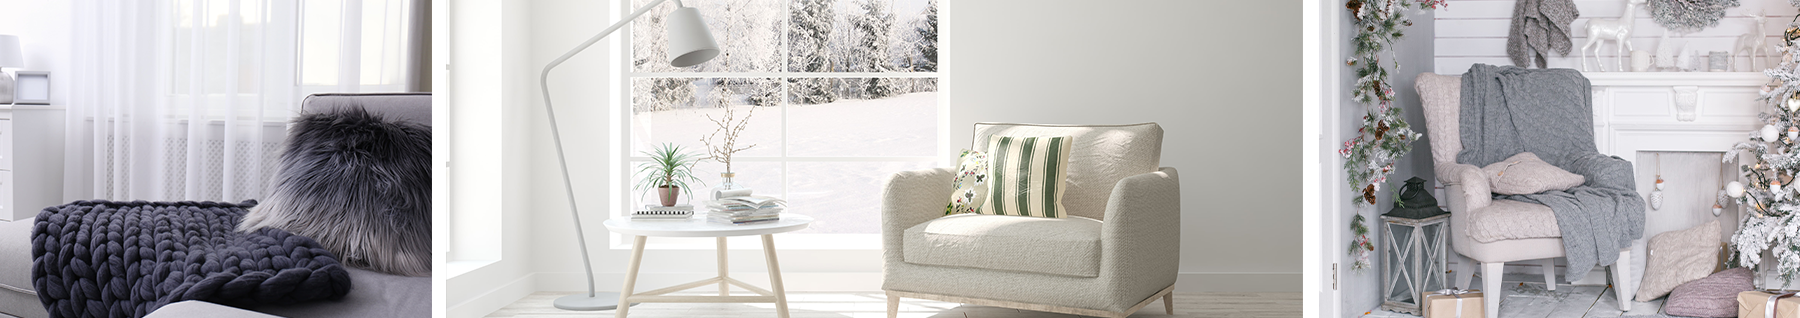 canapé coussin plaid et intérieur blanc hiver cozy et salon noel confort